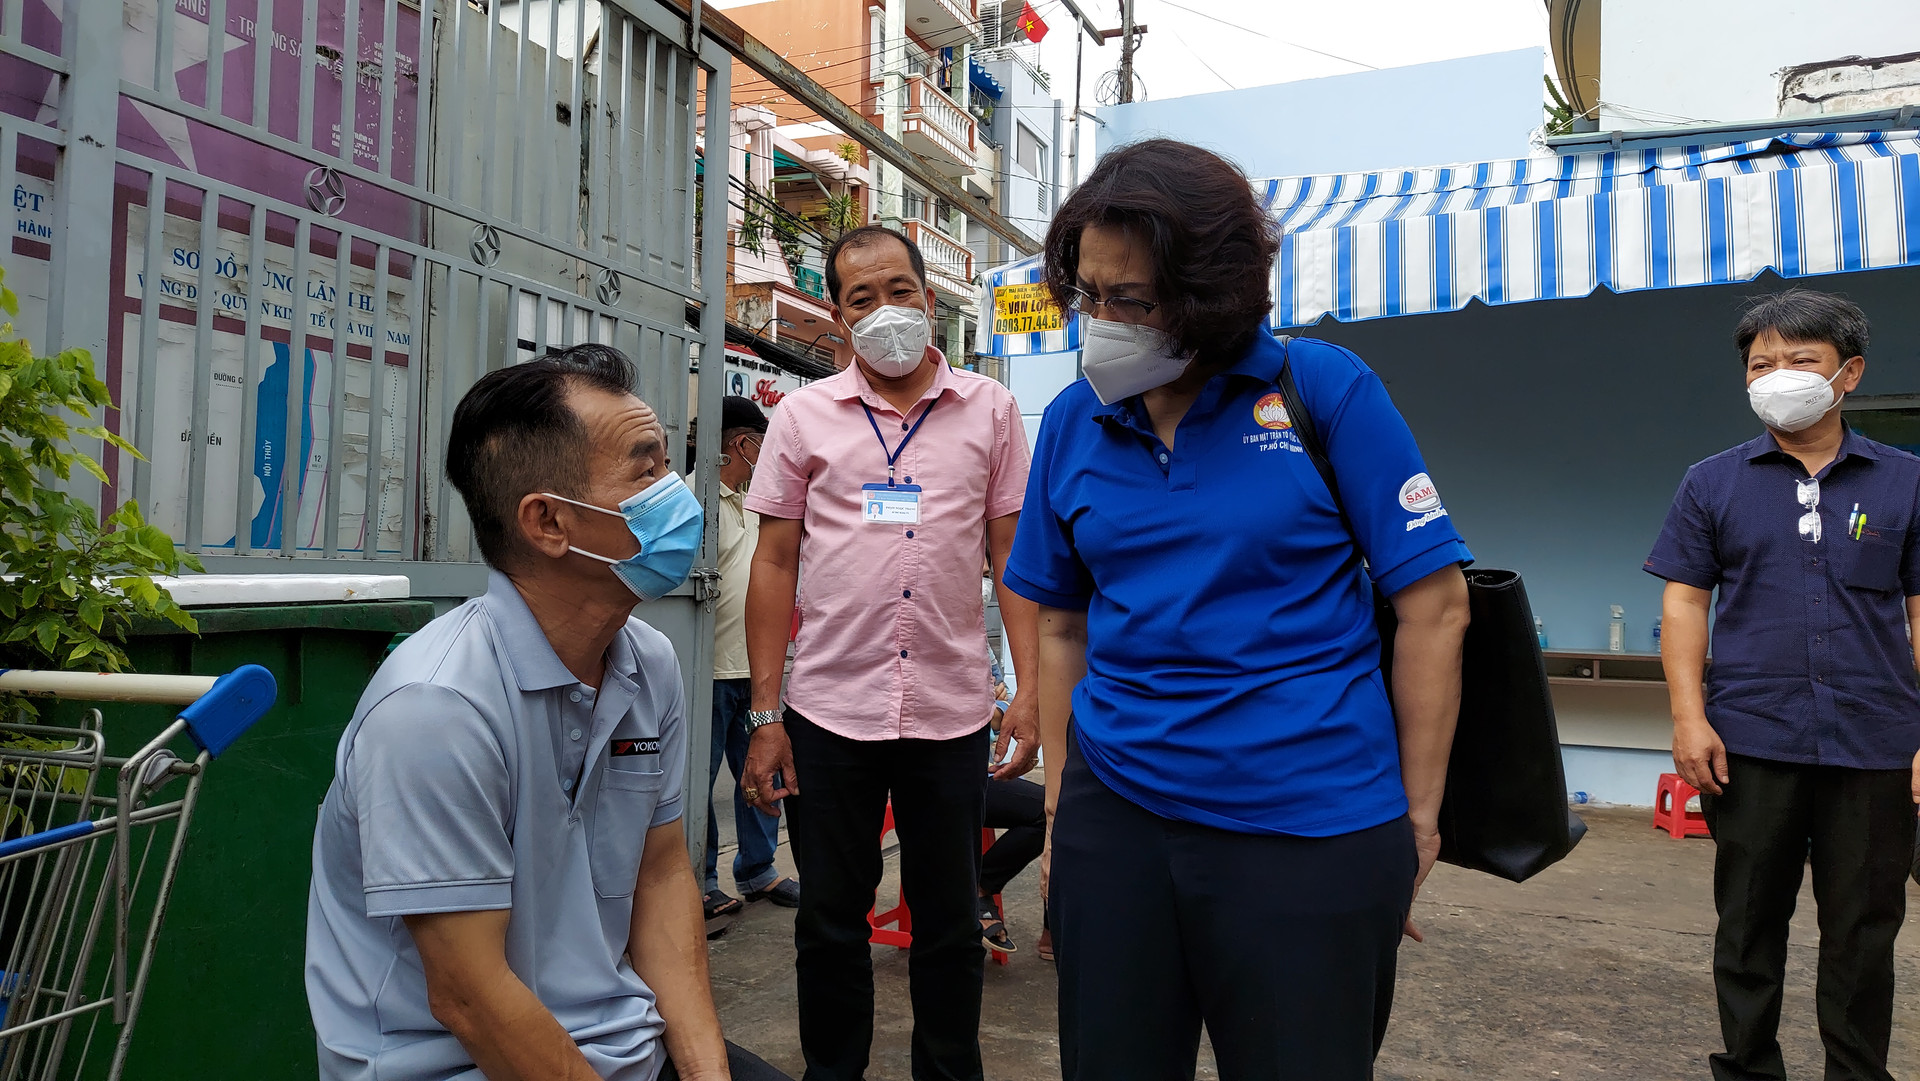 Chủ tịch Ủy ban MTTQVN TP HCM Tô Thị Bích Châu đến kiểm tra và thăm hỏi, tặng túi an sinh cho người dân gặp khó khăn do dịch Covid-19.